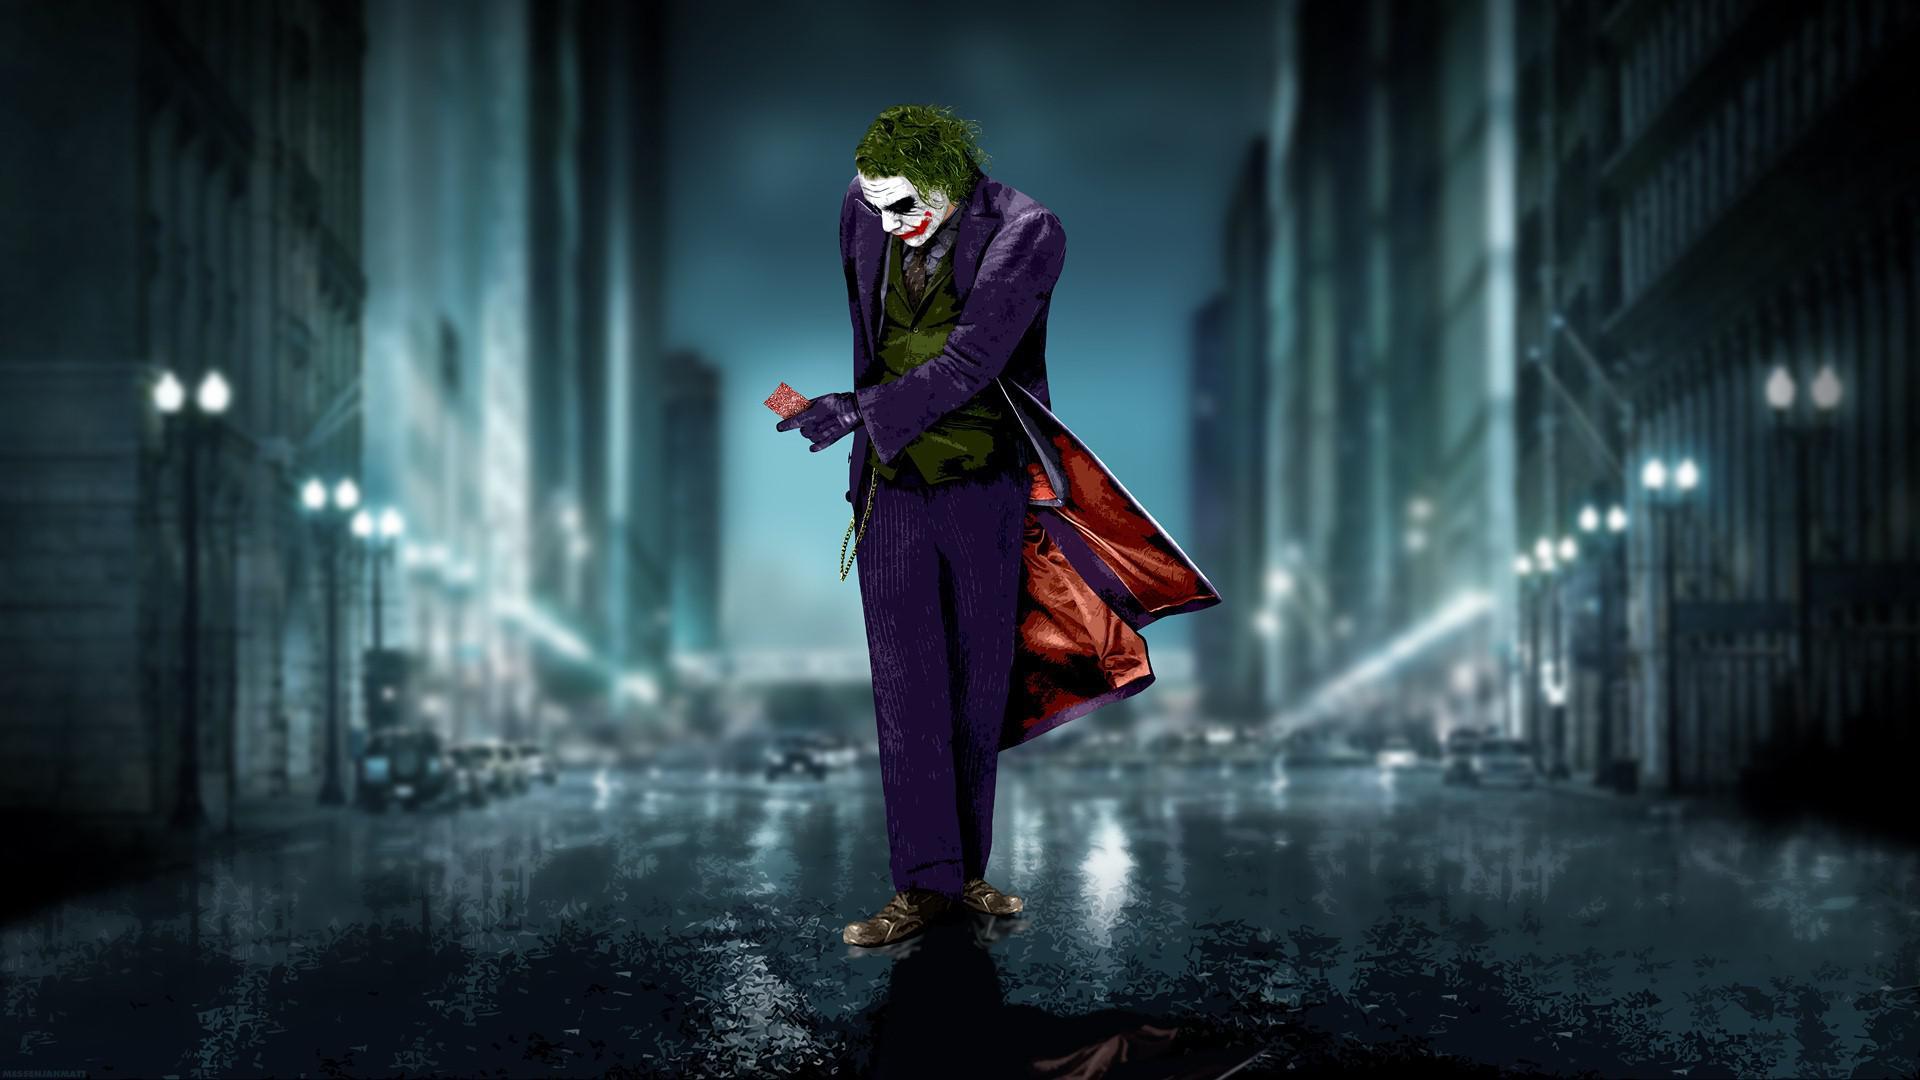 HD Batman Joker Walking on Road Photo Wallpaper. Download Free